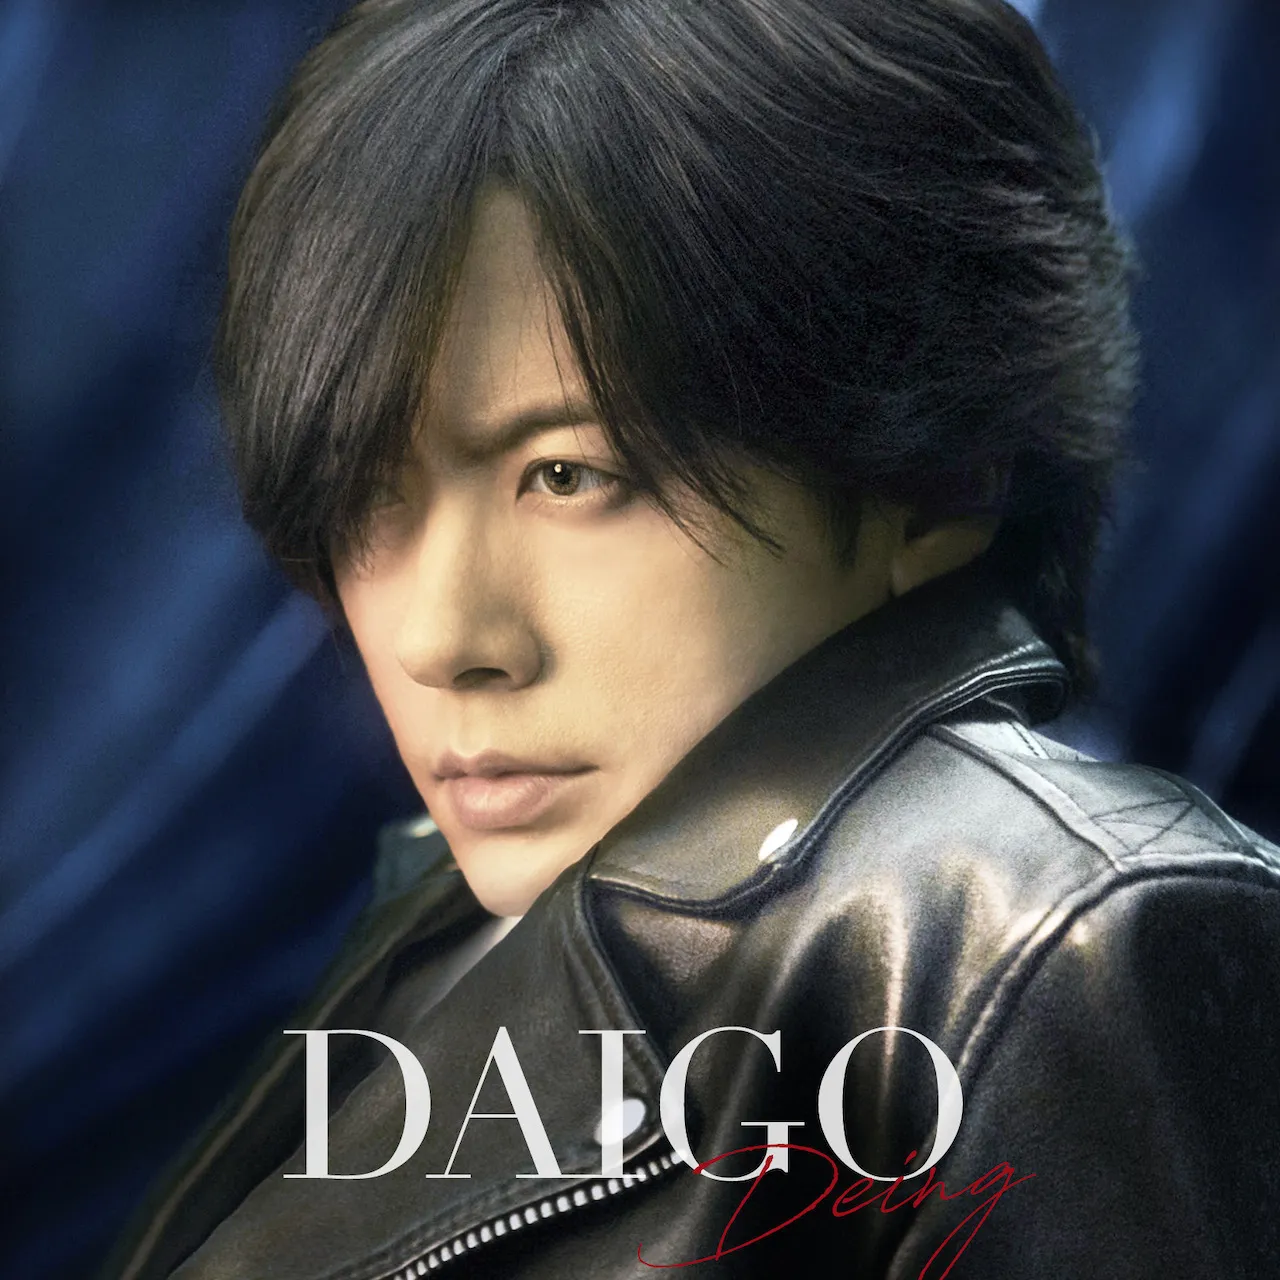 DAIGOの初となるカバーアルバム『Deing』は12月5日(水)に発売される